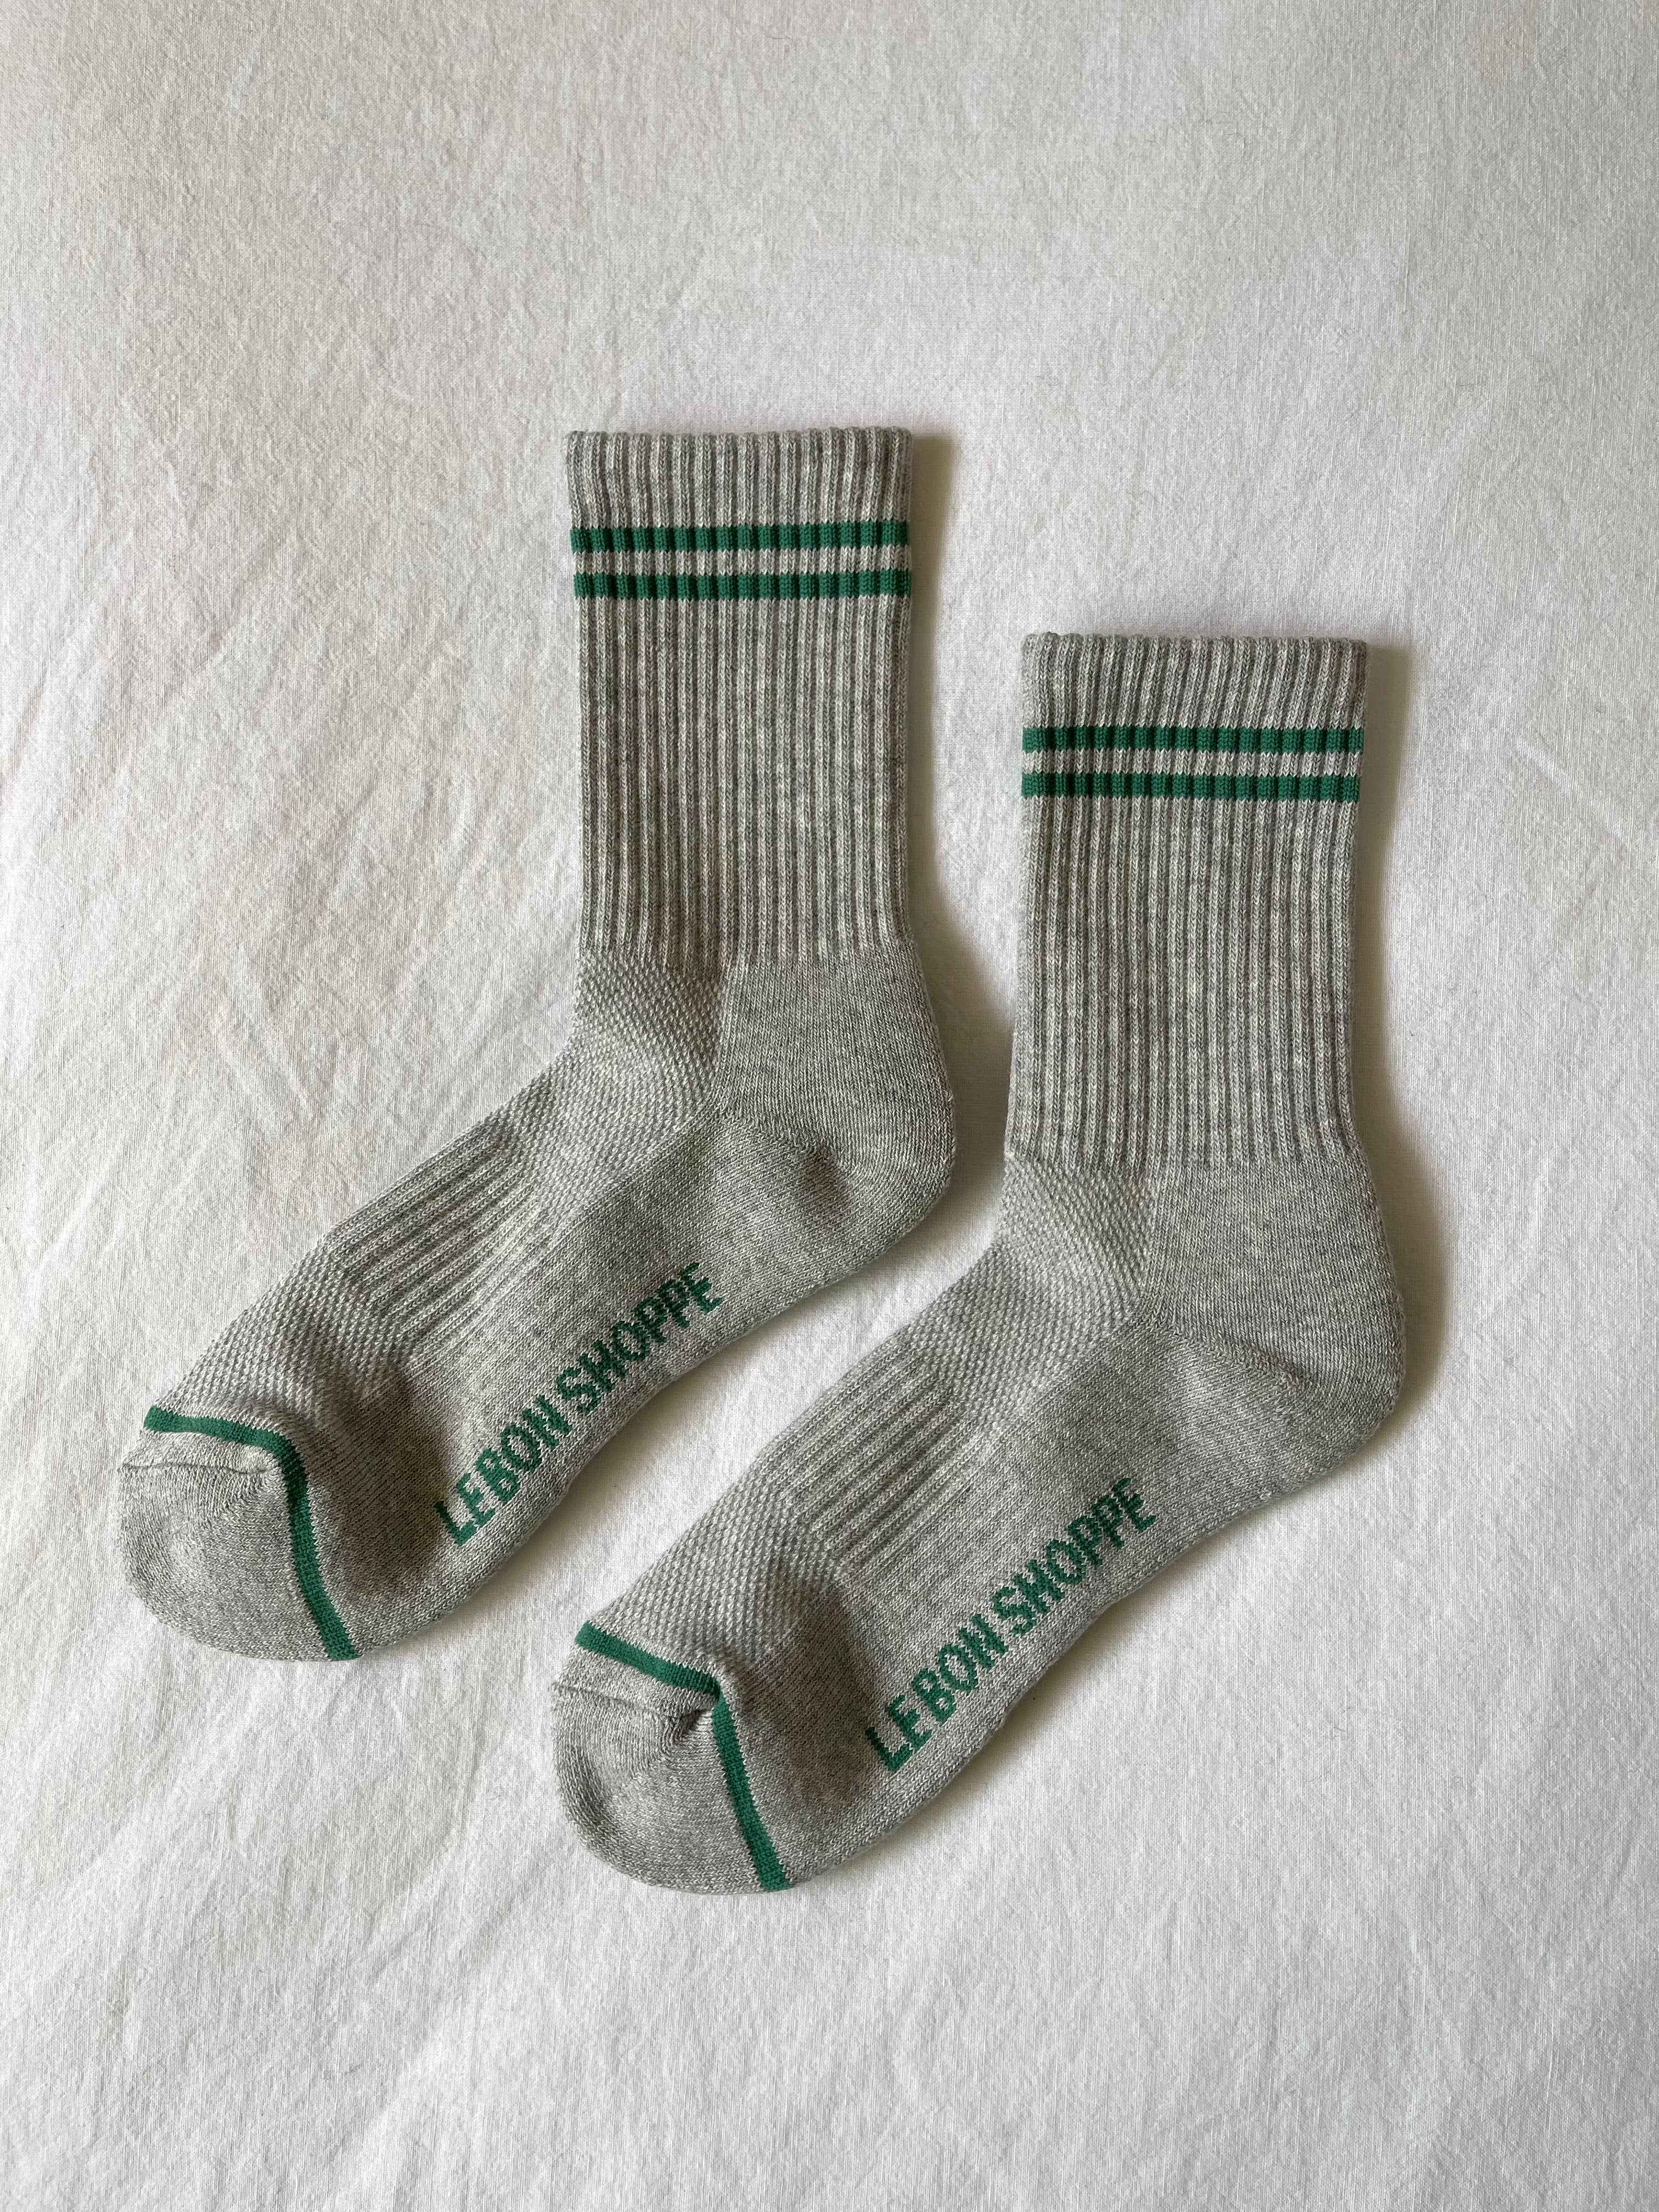 Boyfriend Socks - Proper